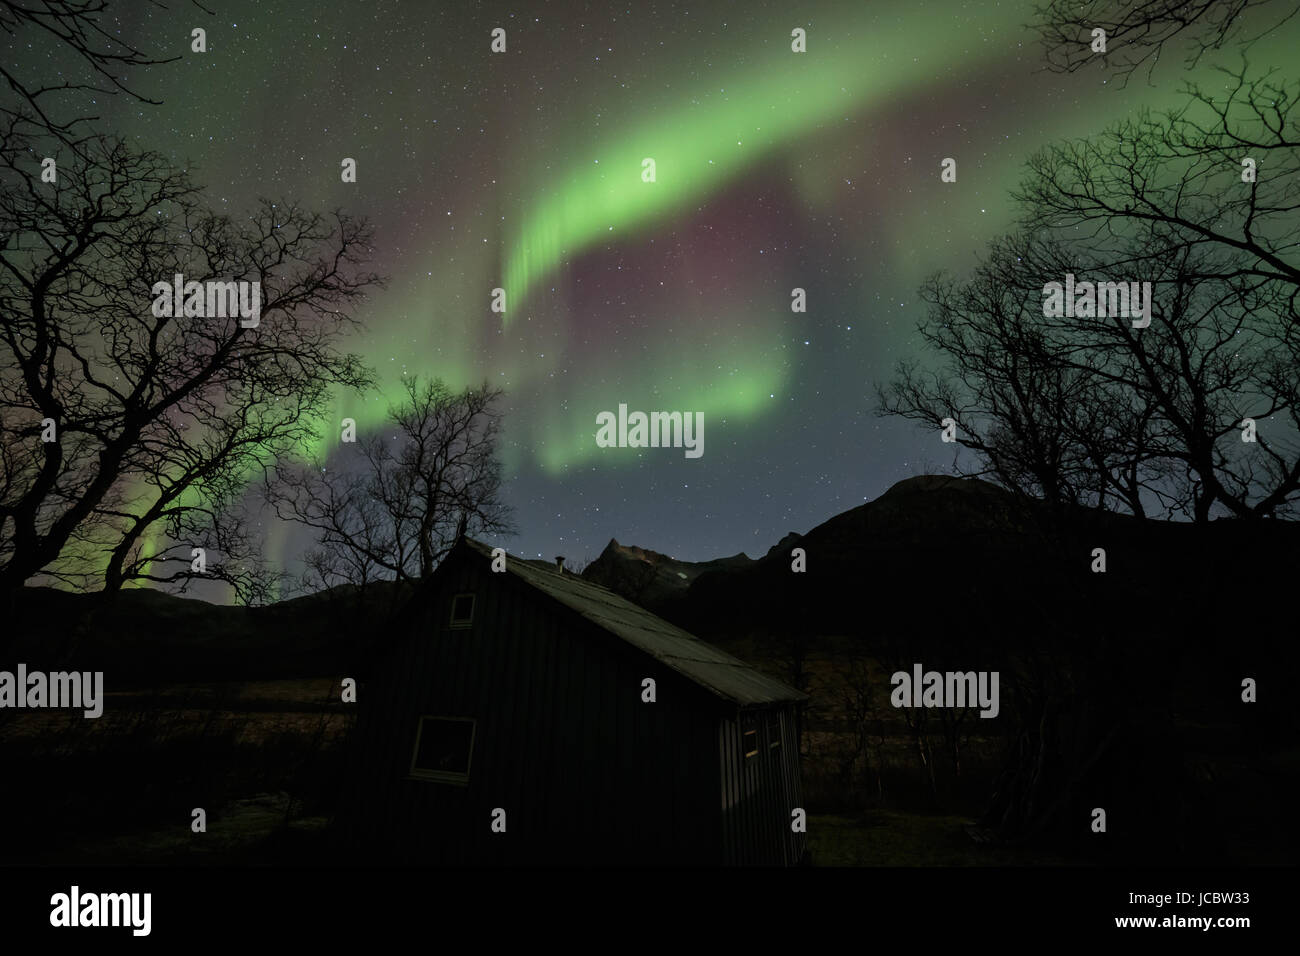 Aurora boreale o luci del nord, attivo tende colorate in movimento attraverso il cielo notturno nel circolo polare artico isola Kvaloya Troms Tromso Norvegia regione Foto Stock